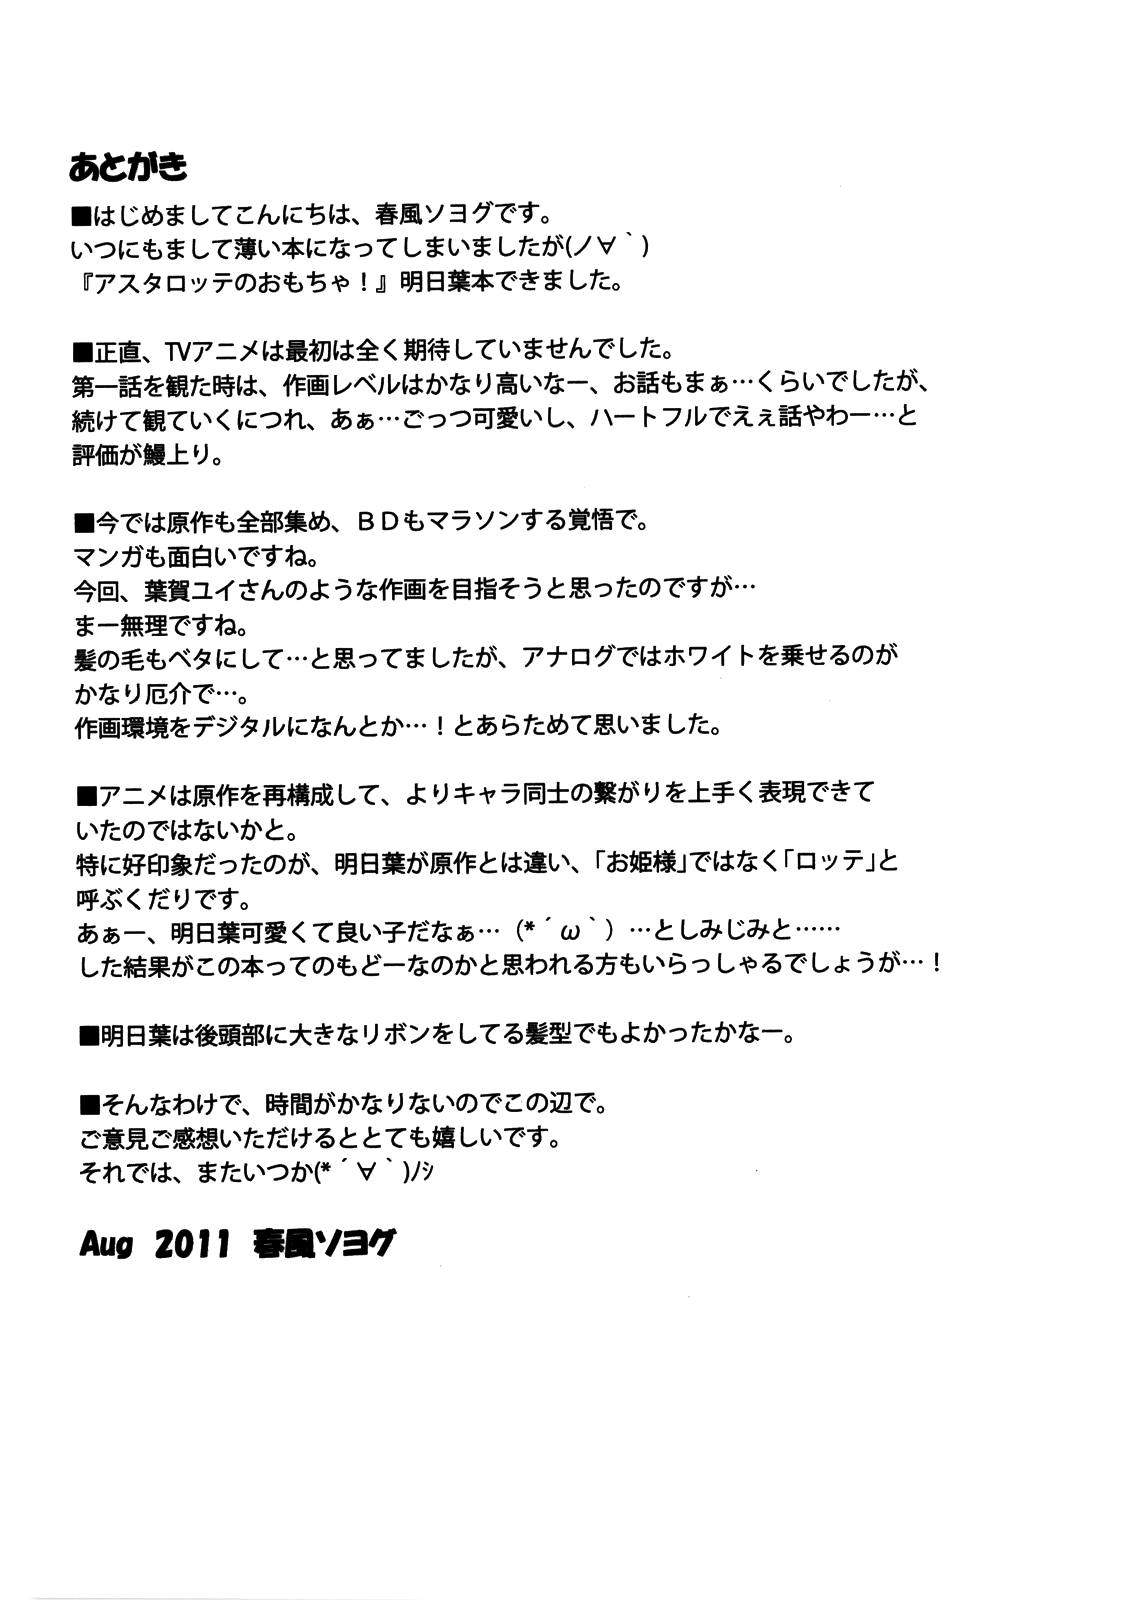 Free Amature Asuhariet no Omocha o Chuu Chuu! - Lotte no omocha Beauty - Page 10